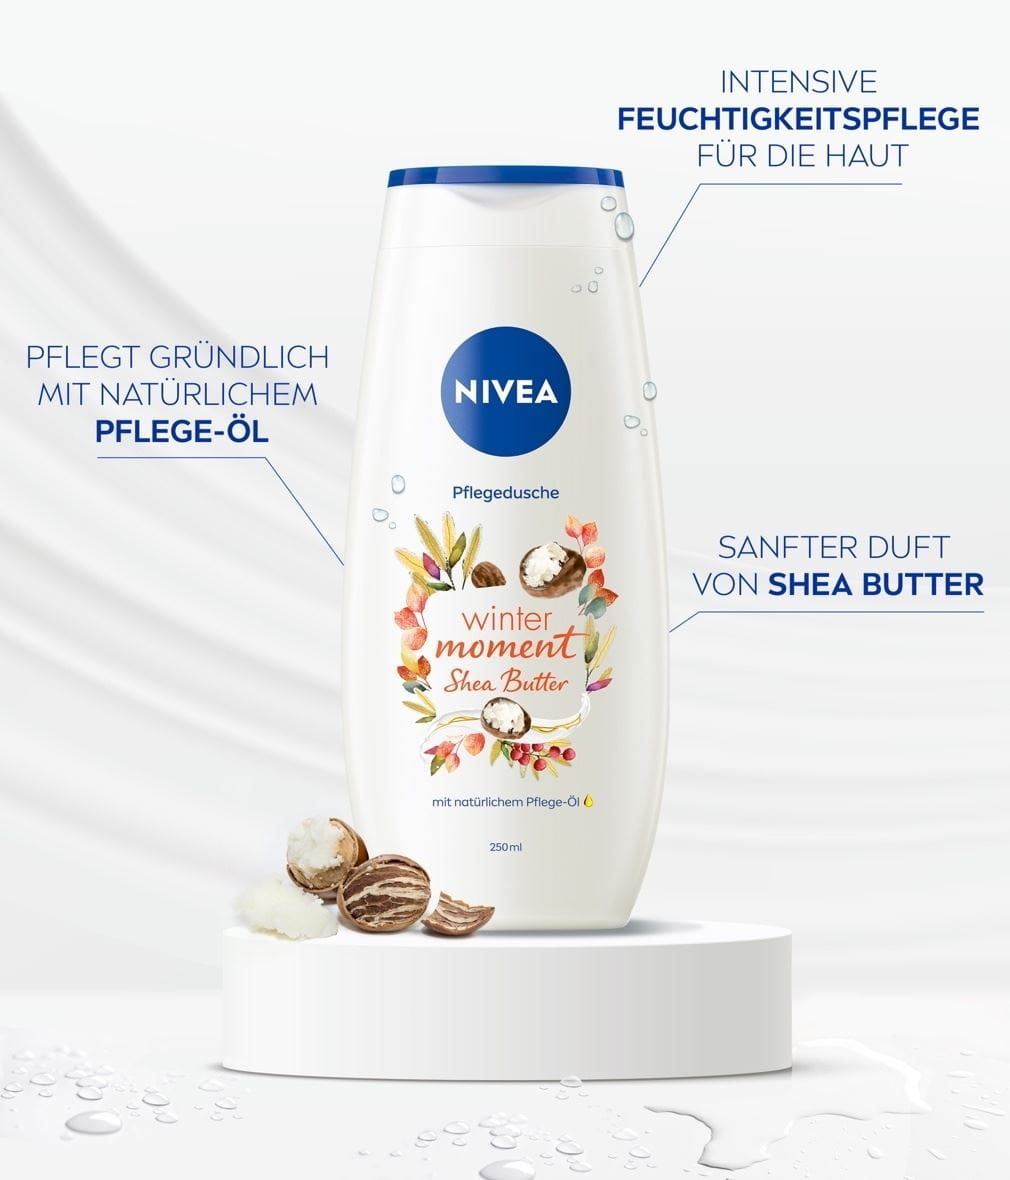 NIVEA Pflegedusche Winter Moment Shea Butter Pflege Oel Produktabbildung mit Benefits